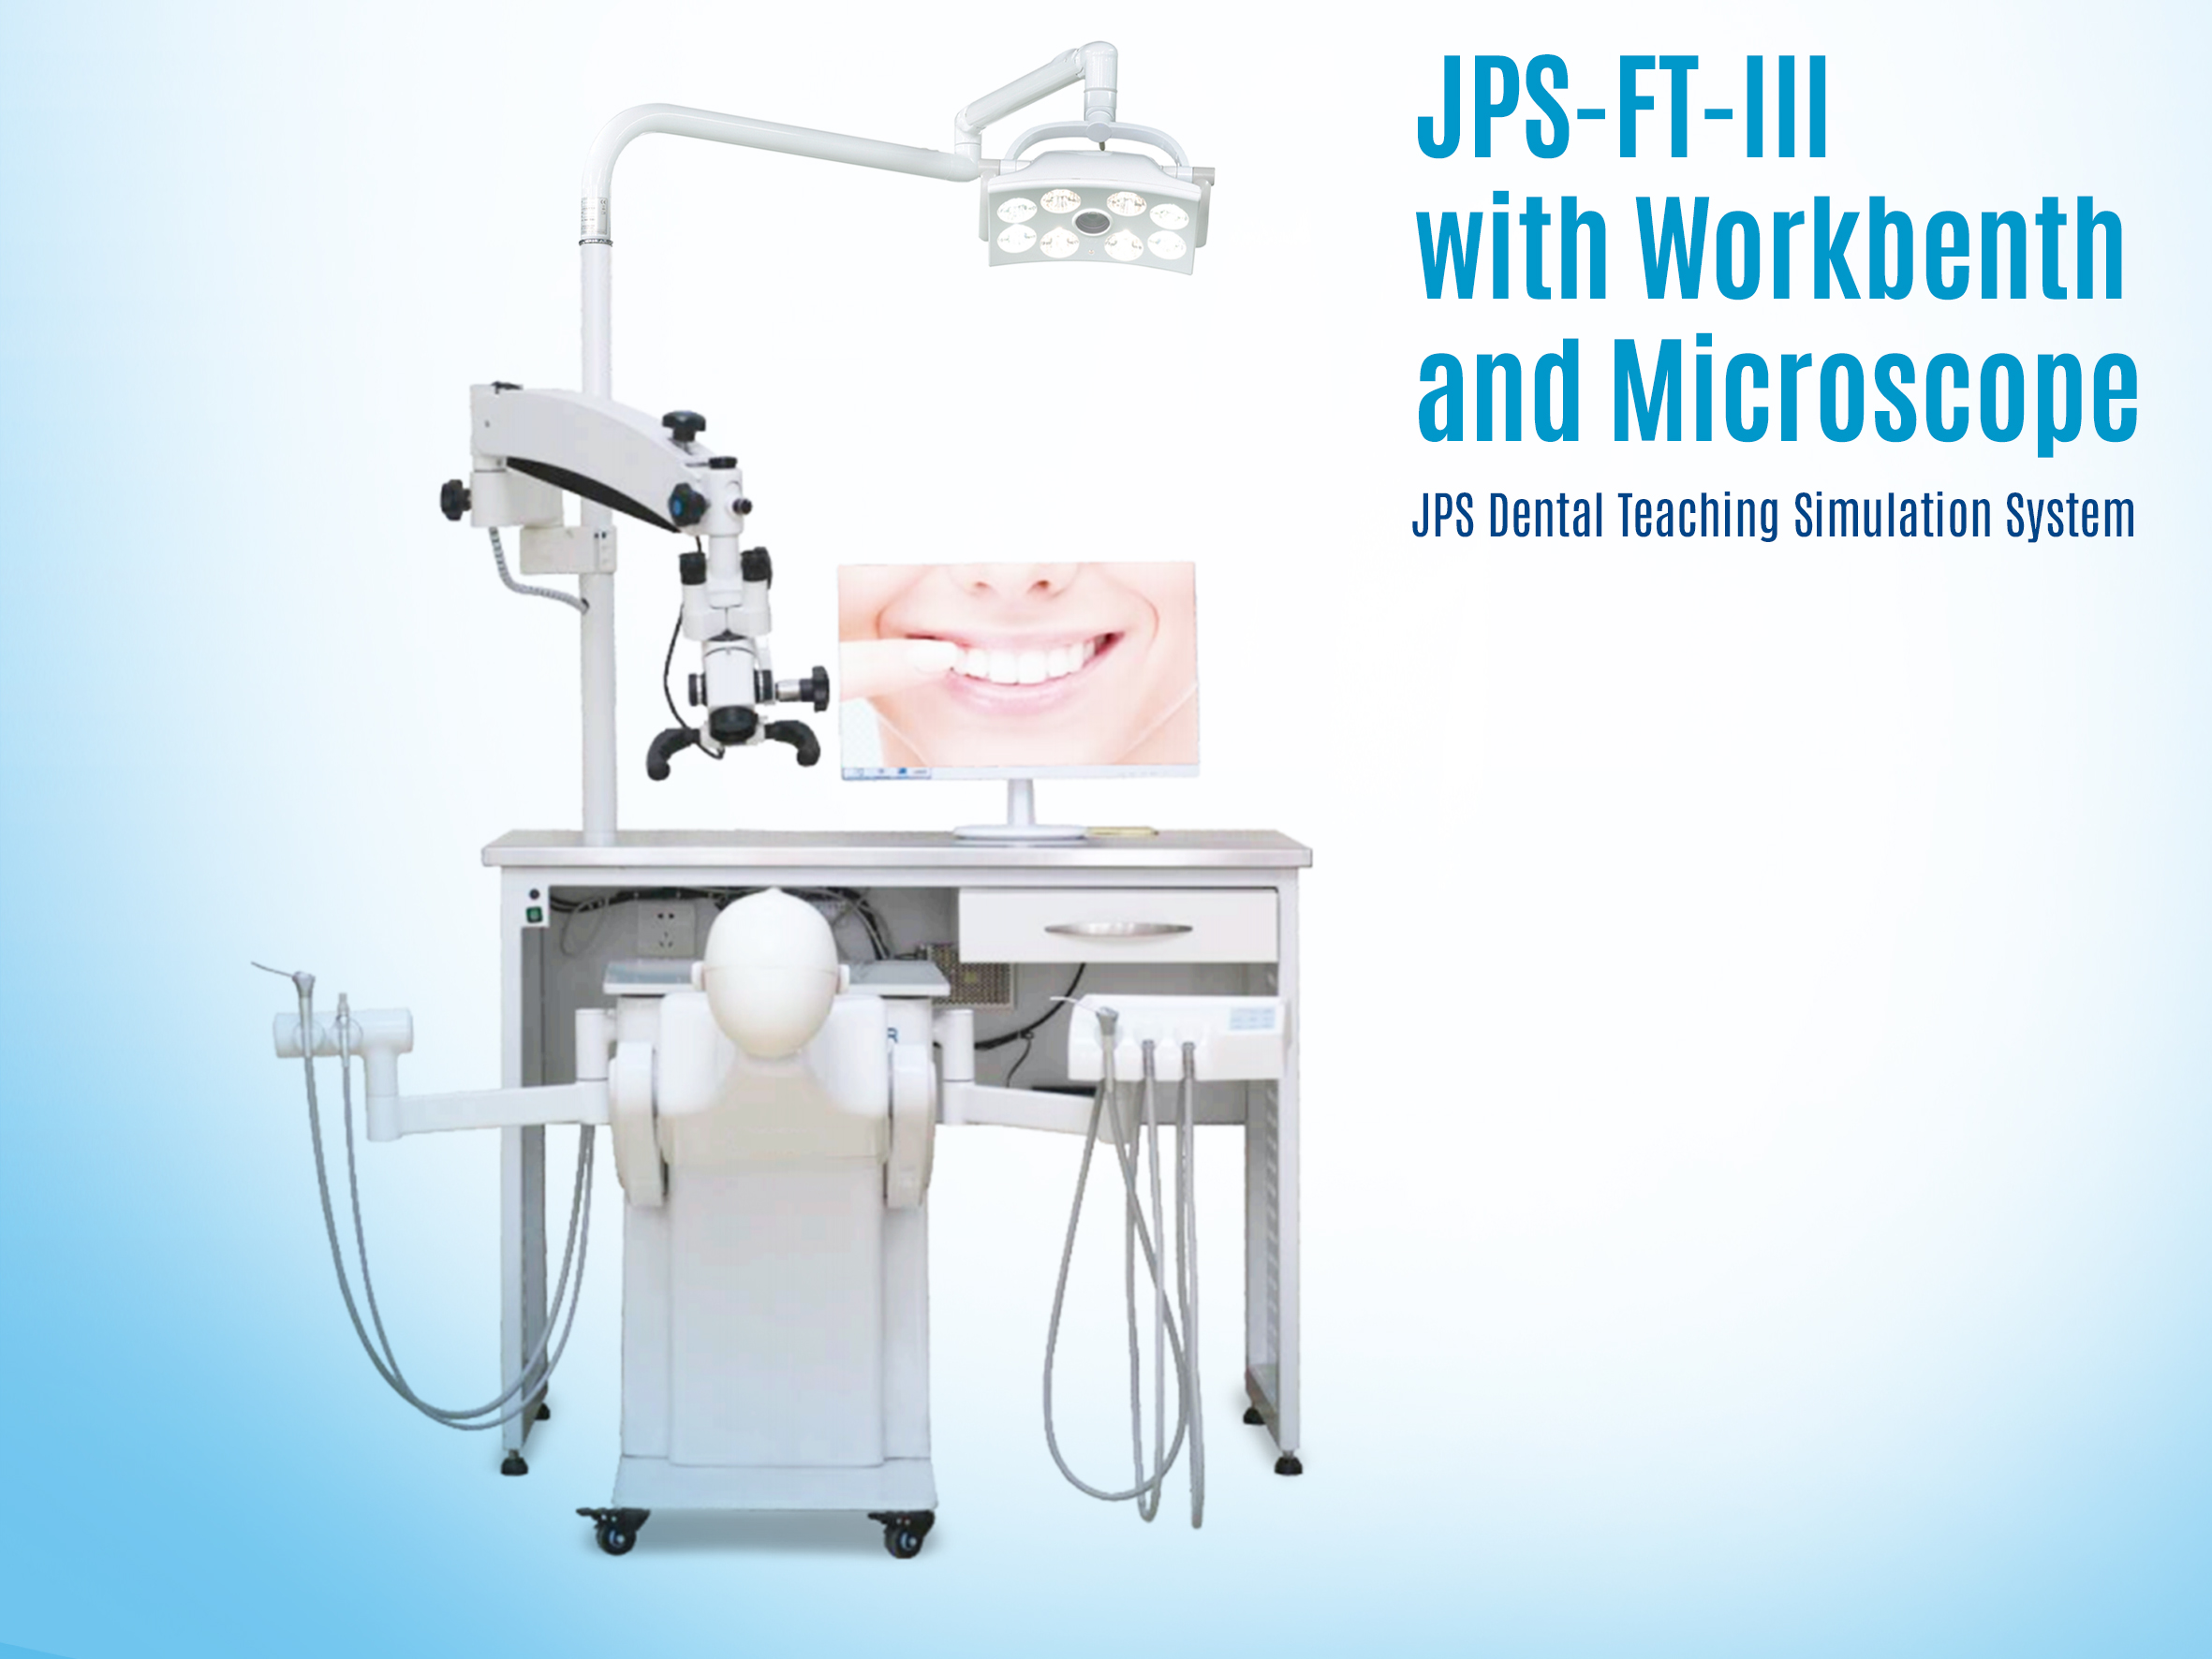 Shanghai JPS Medical Co., Ltd presenta un "simulador avanzado con banco de trabajo y microscopio" para educación dental